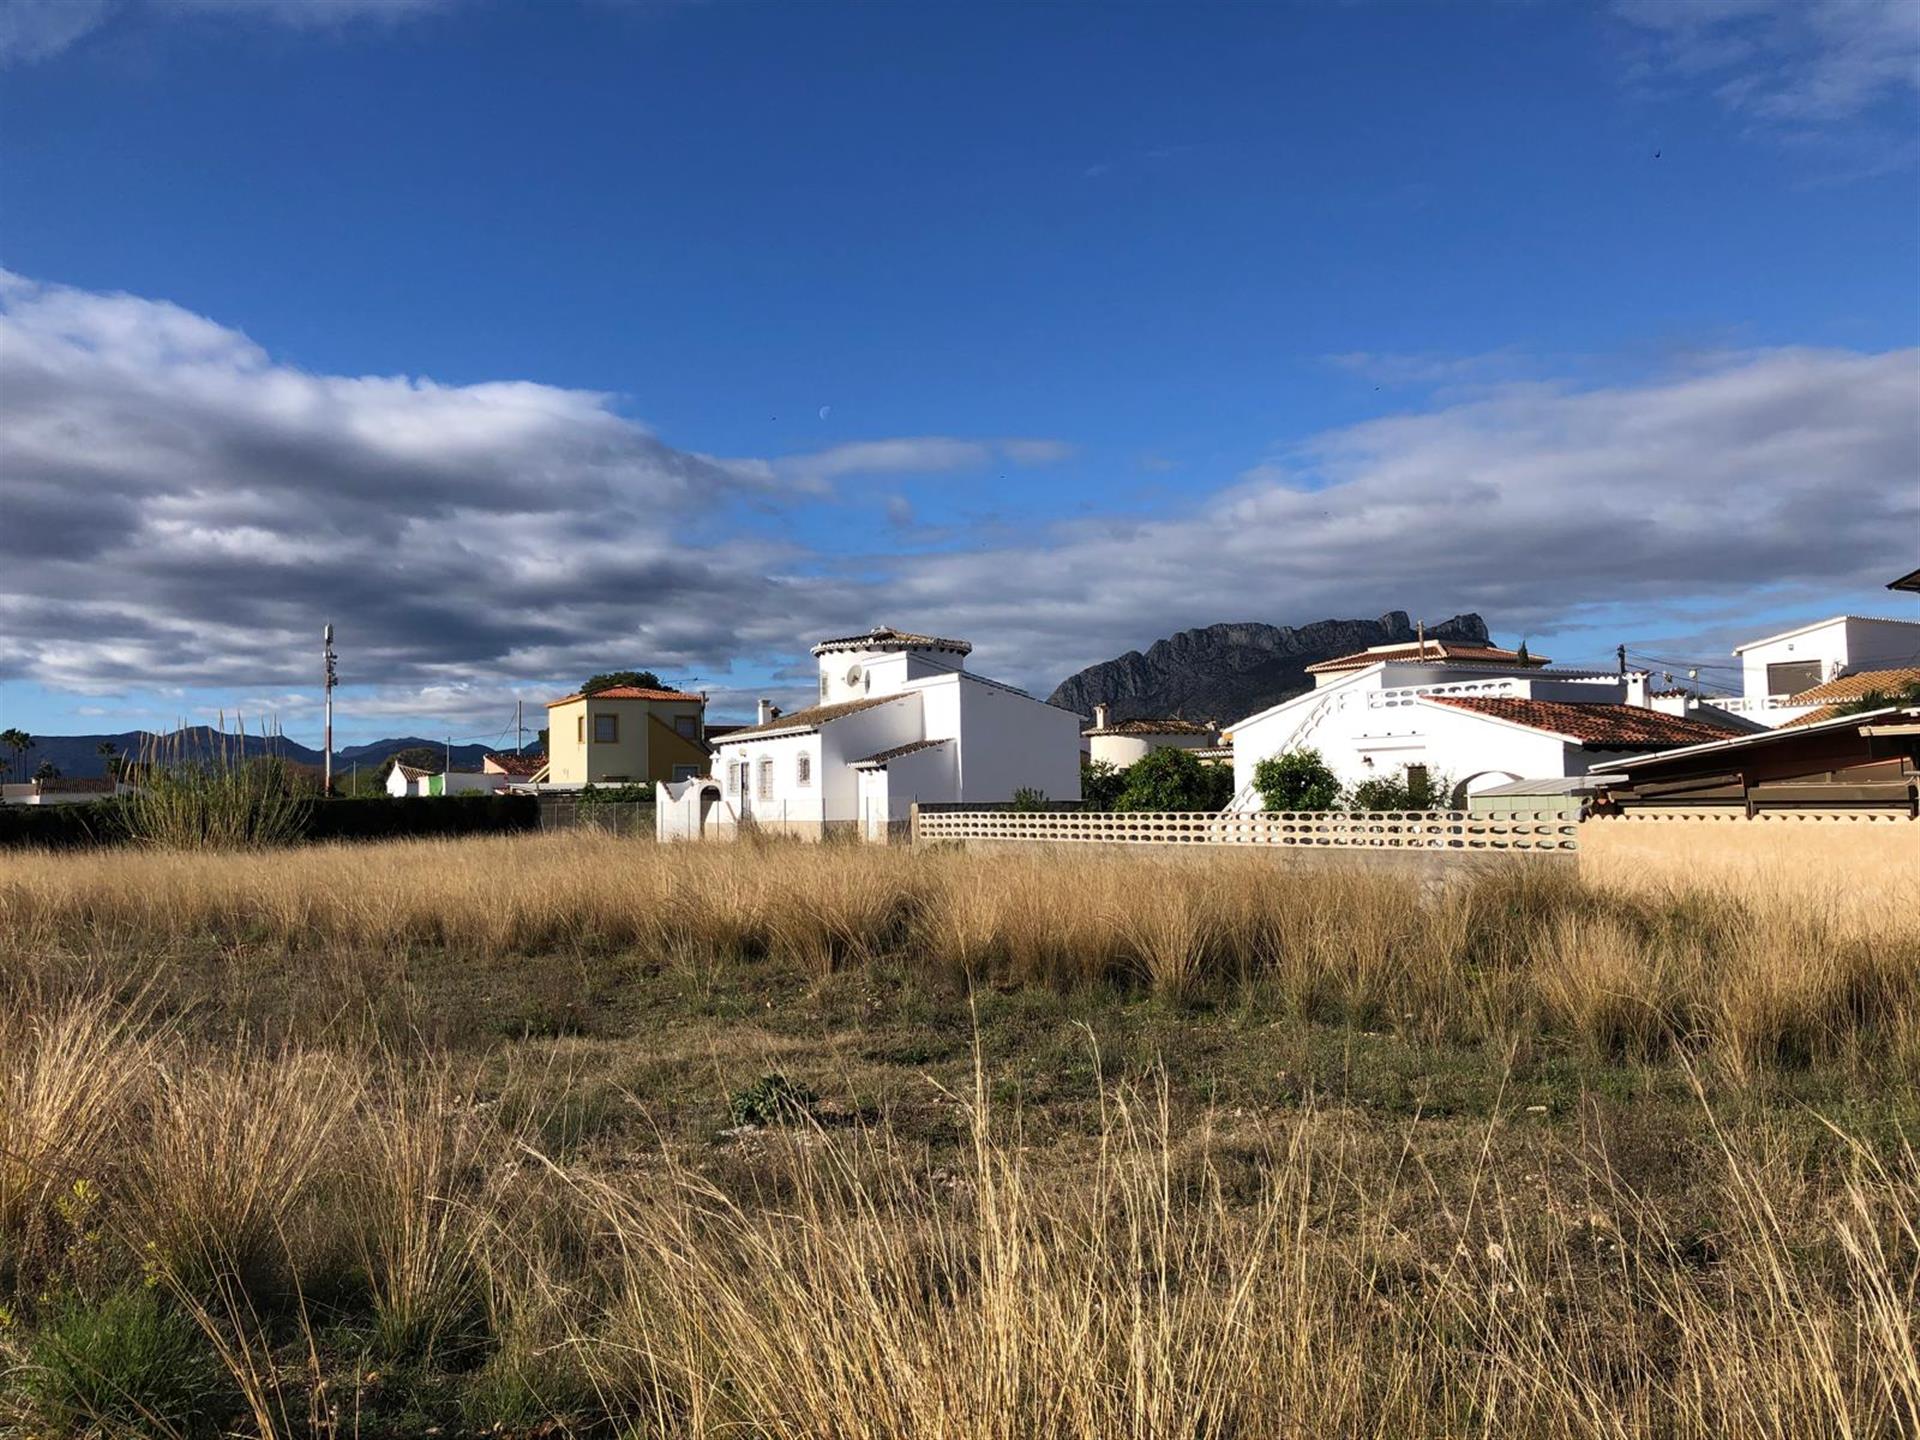 בית ליד הים, דניה, קוסטה בלאנקה, ספרד